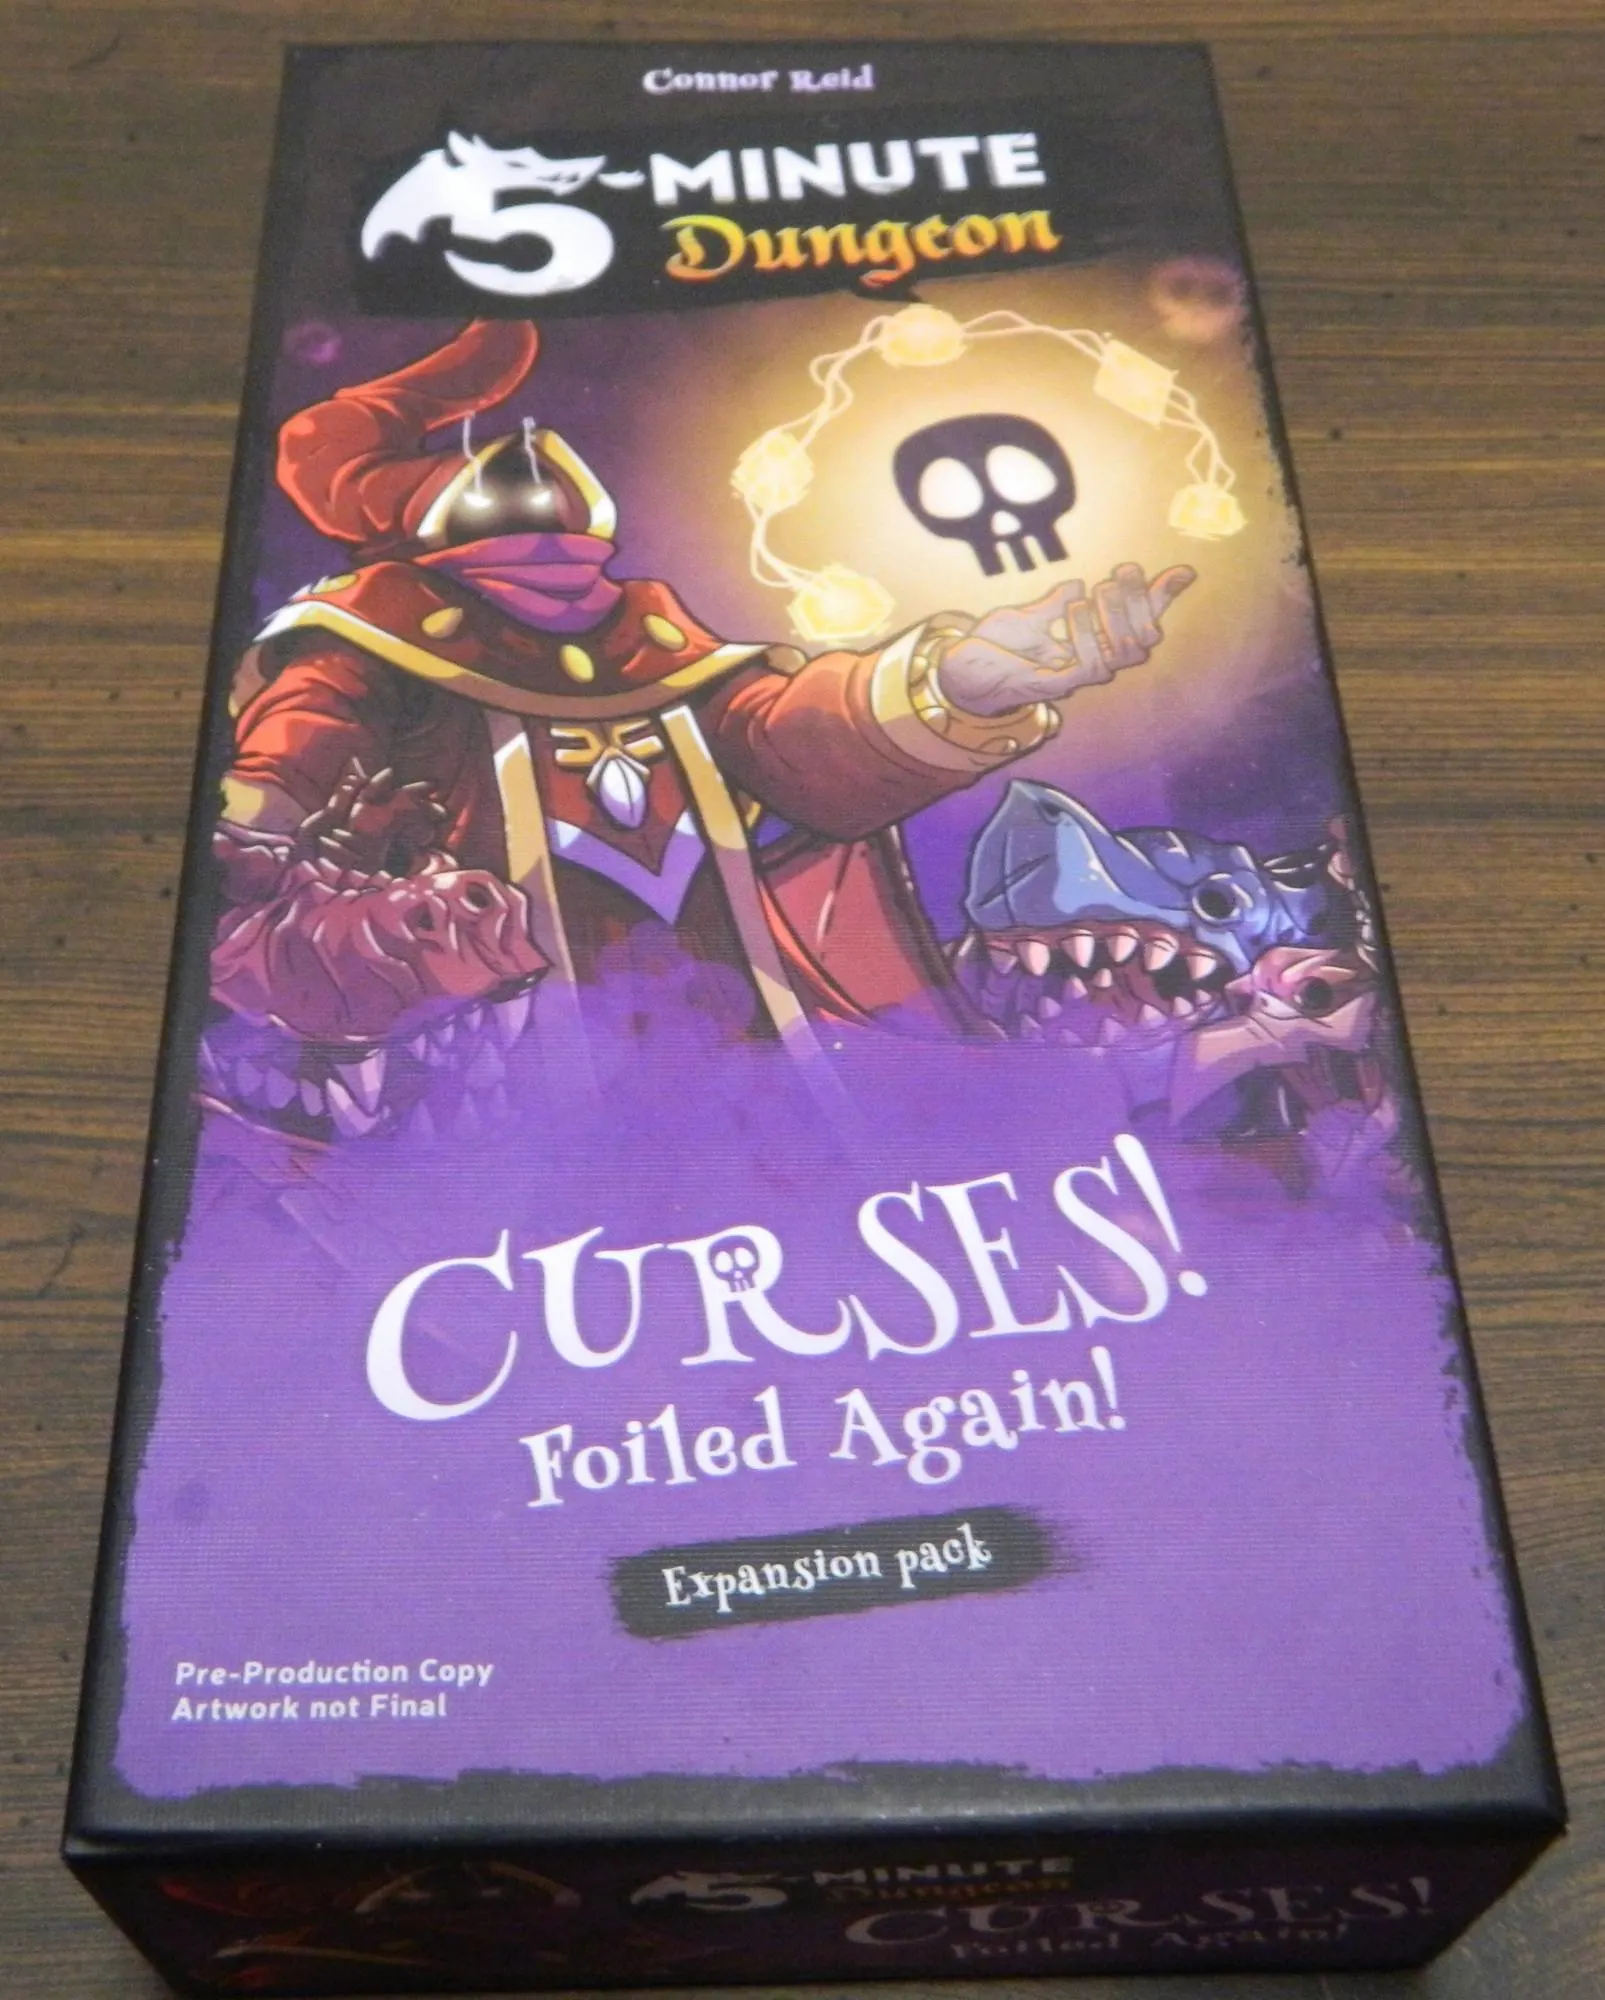 5-Minute Dungeon Curses! Foiled Again! Box